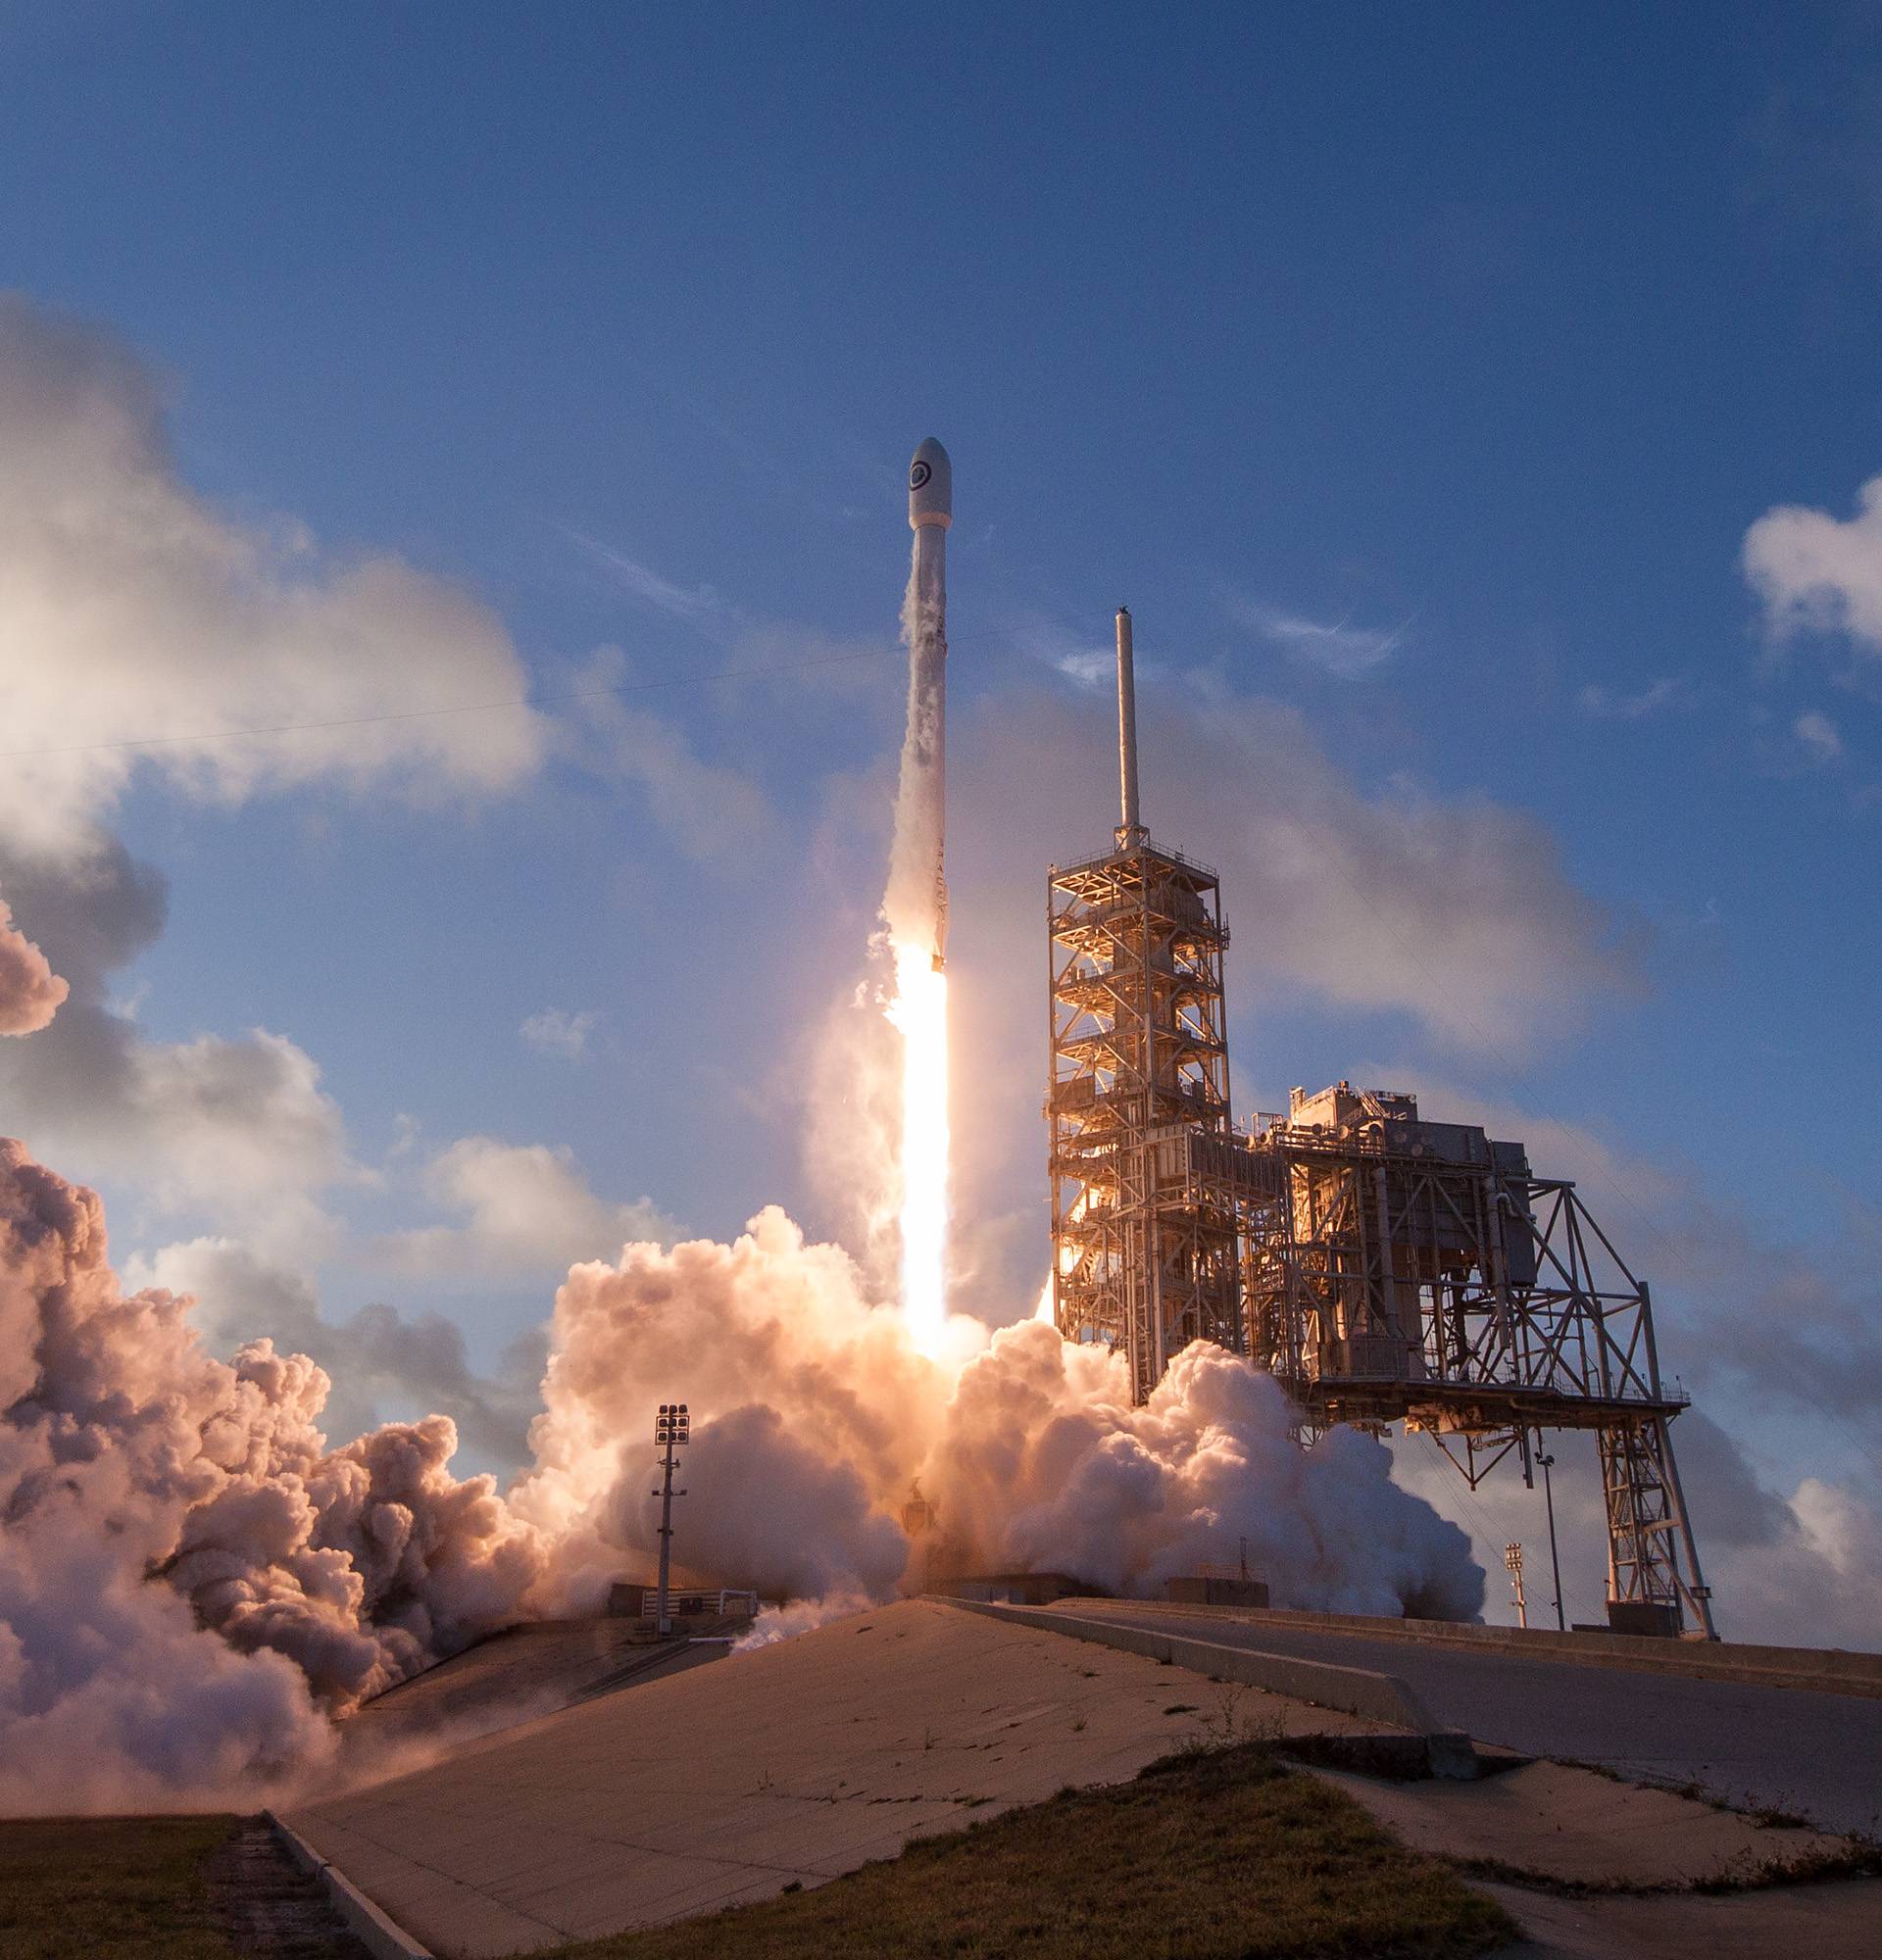 Tajna misija: SpaceX lansirao prvi špijunski satelit u svemir